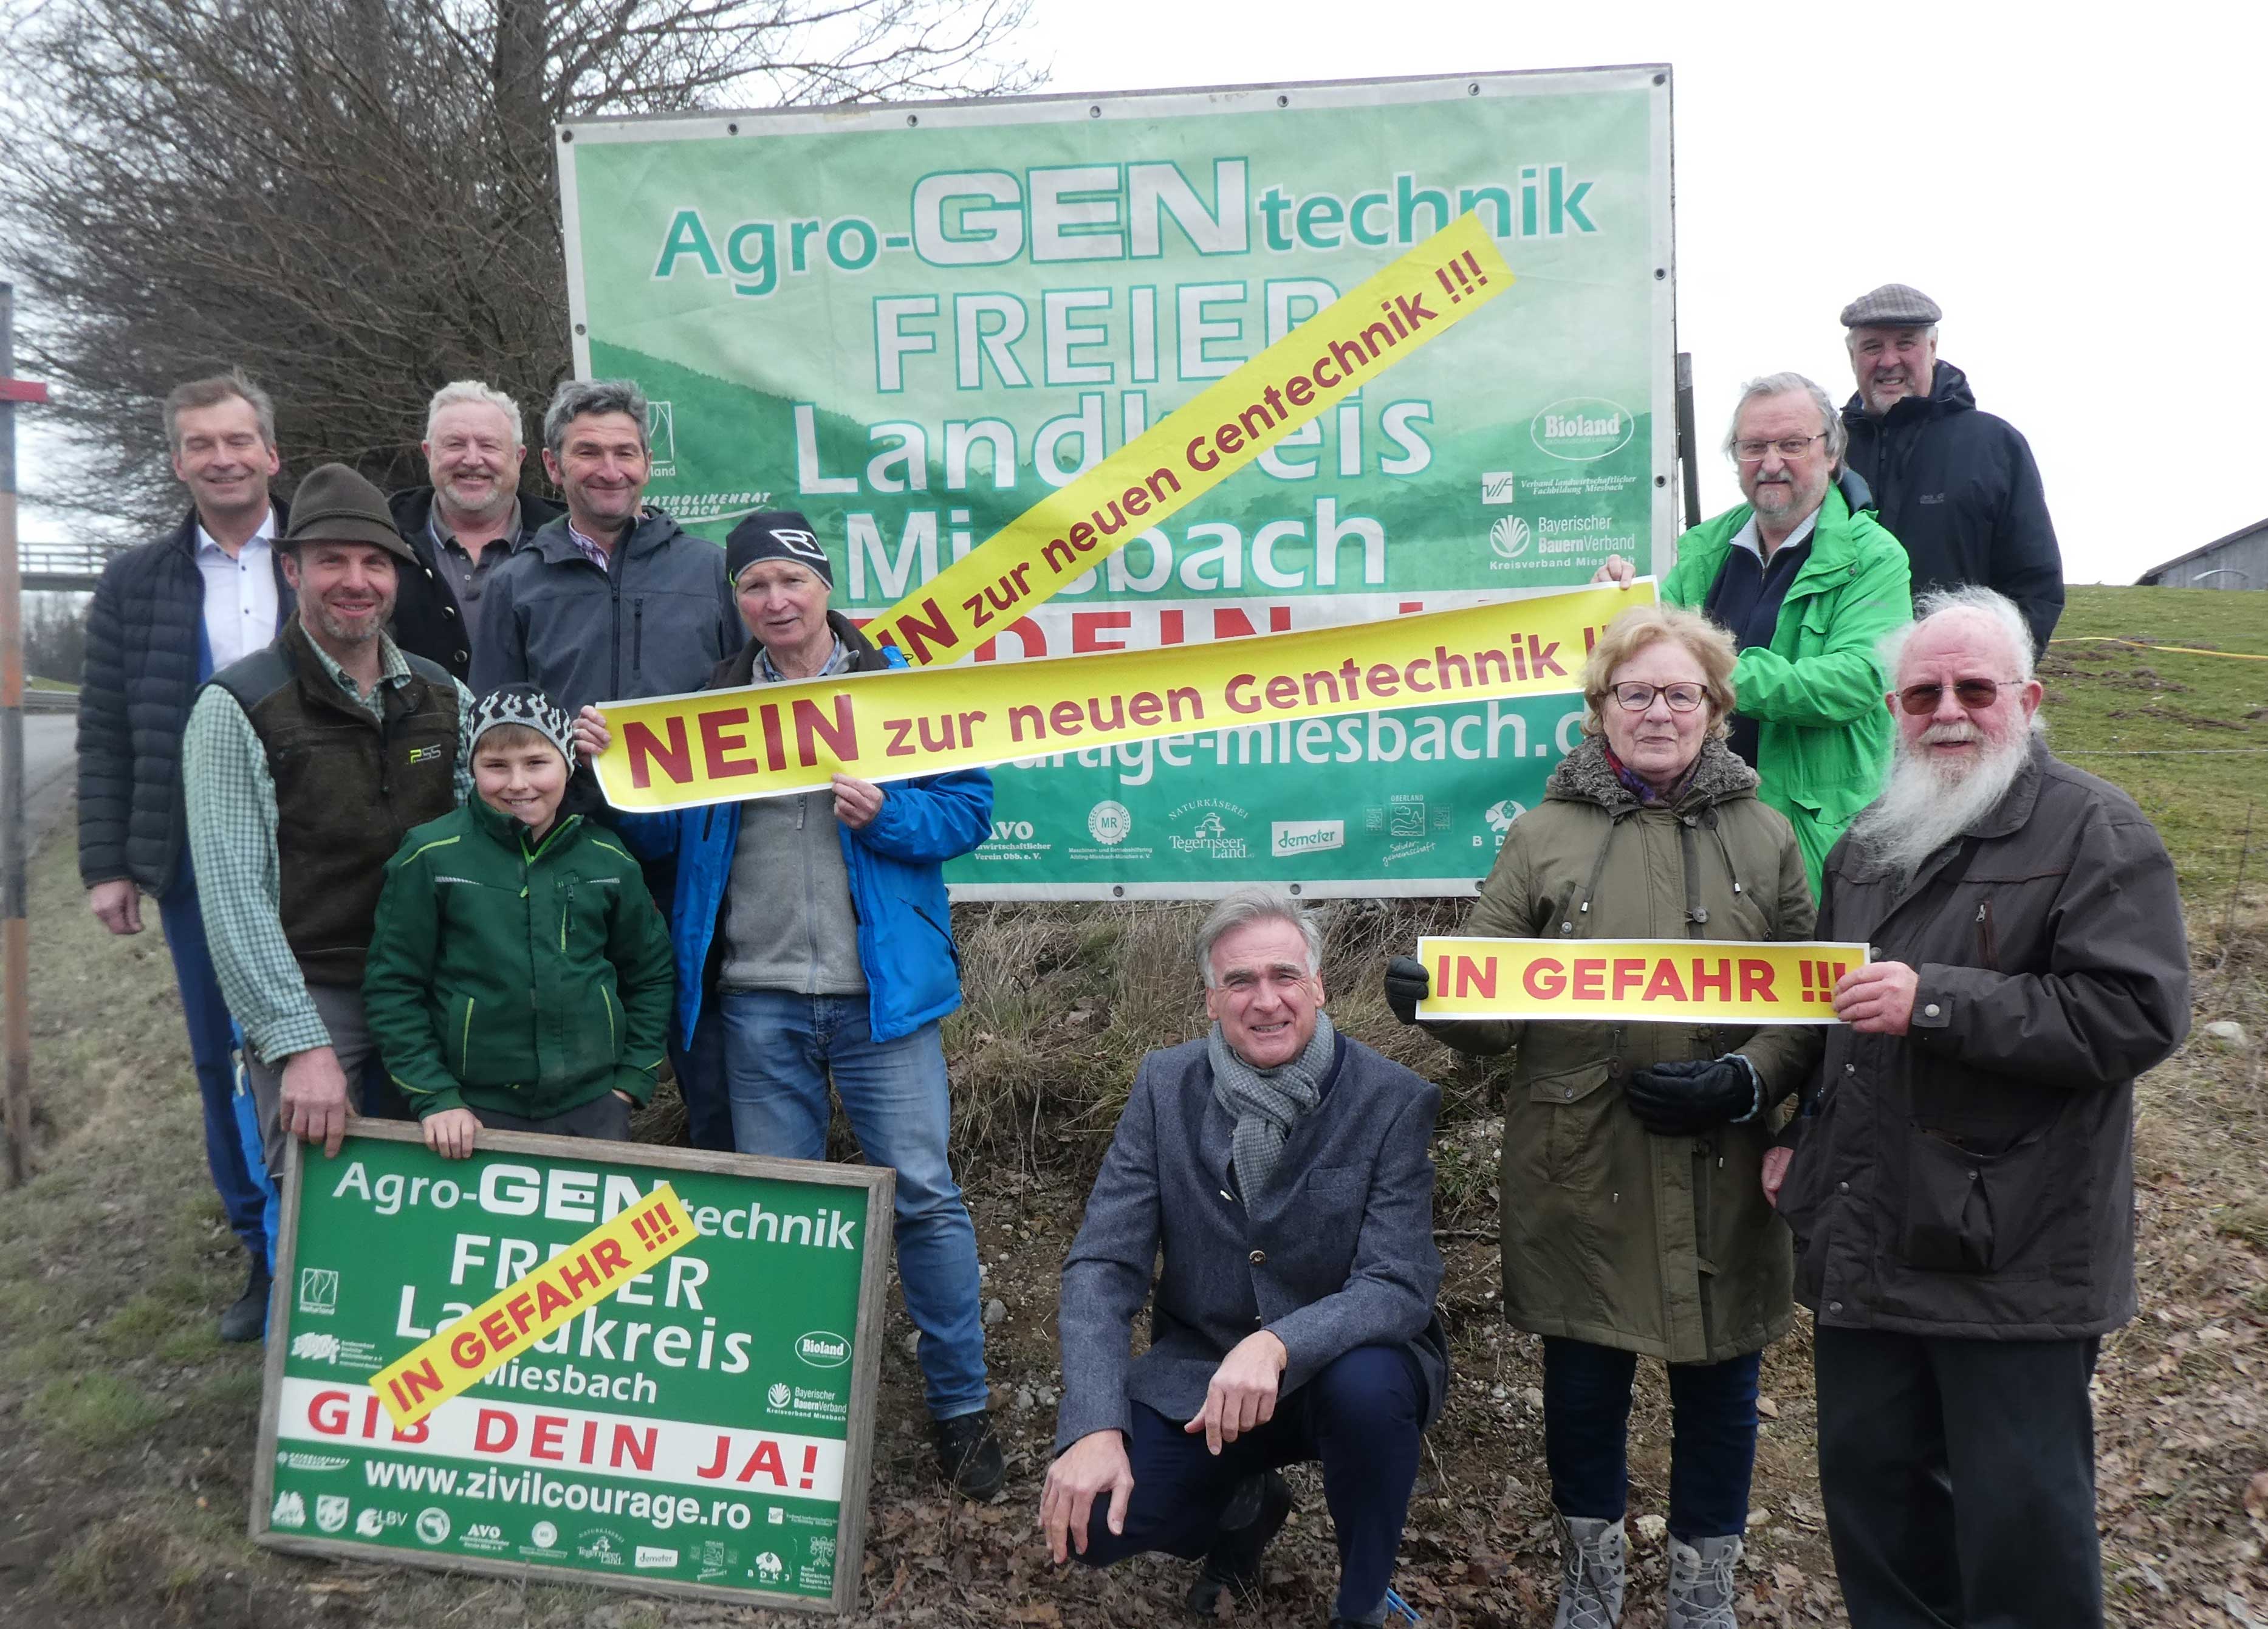 Nein zur Agro-Gentechnik